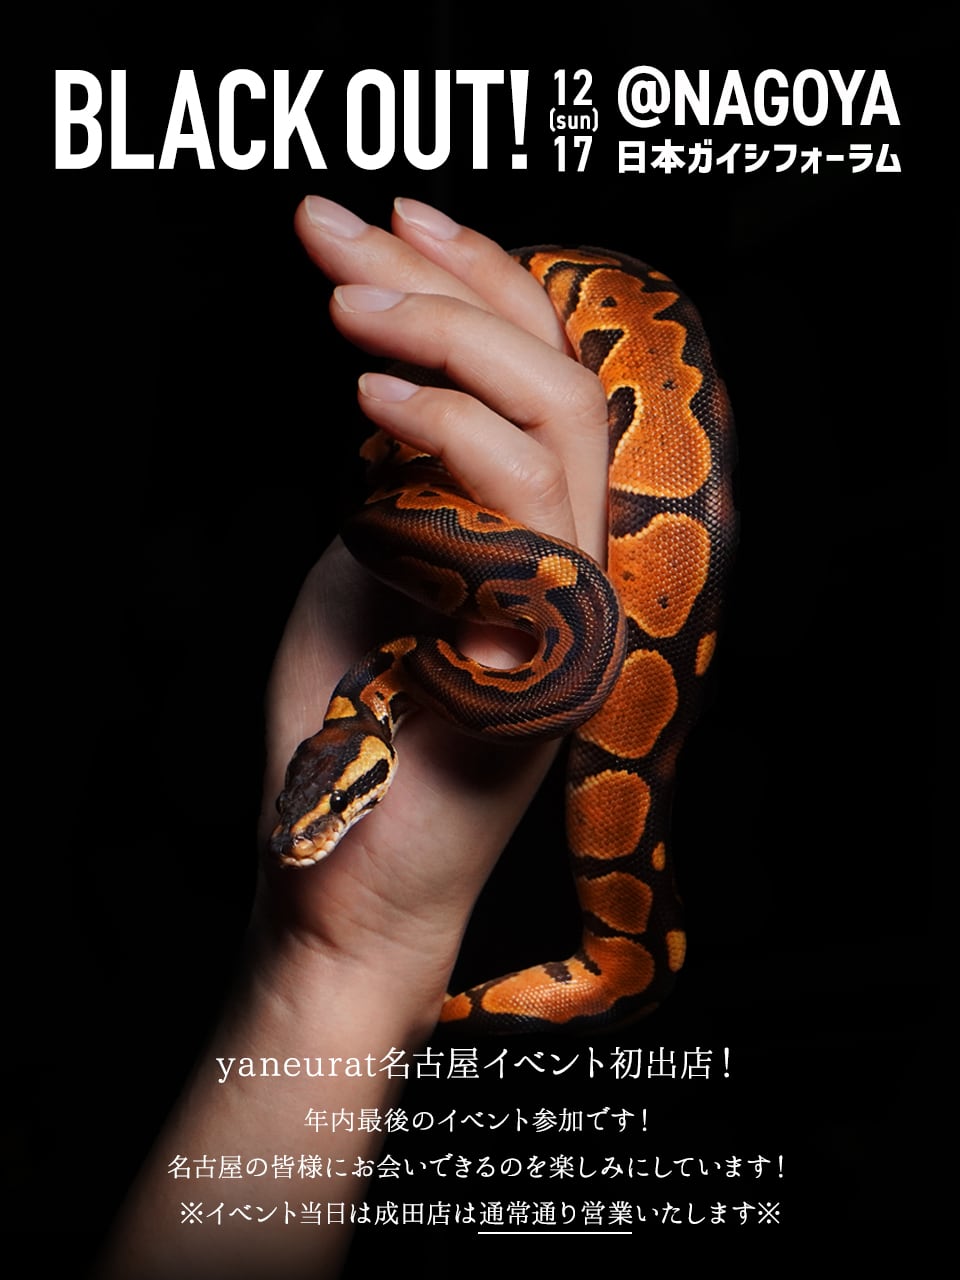 12月17日(日)BLACK OUT!名古屋出店のお知らせ